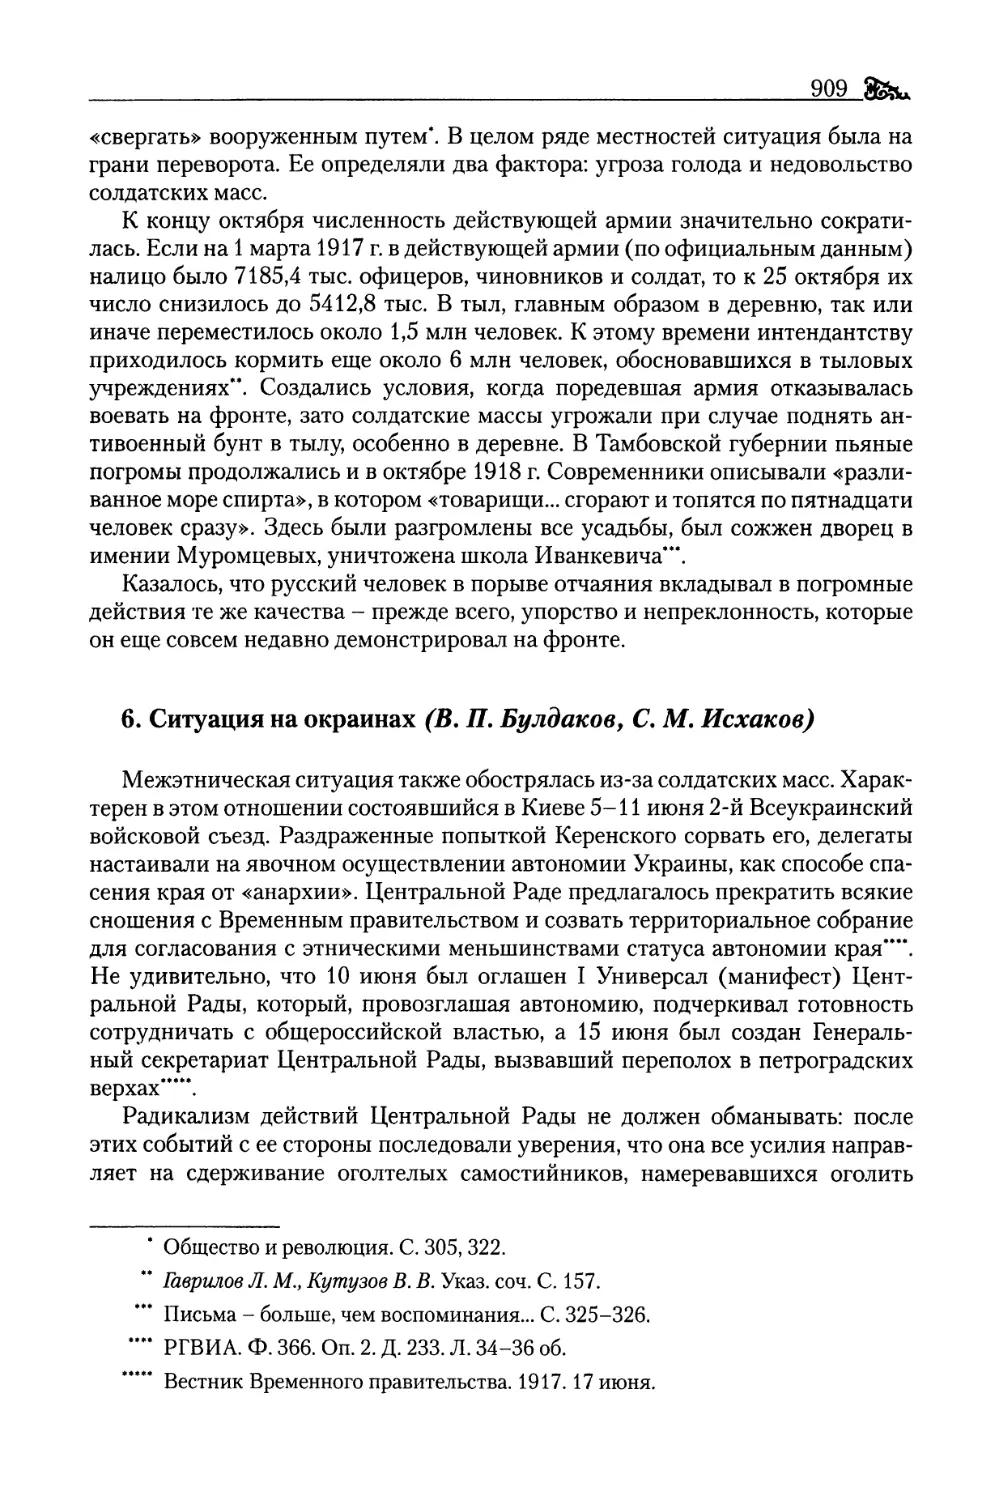 6. Ситуация на окраинах (В. П. Булдаков, С. М. Исхаков)